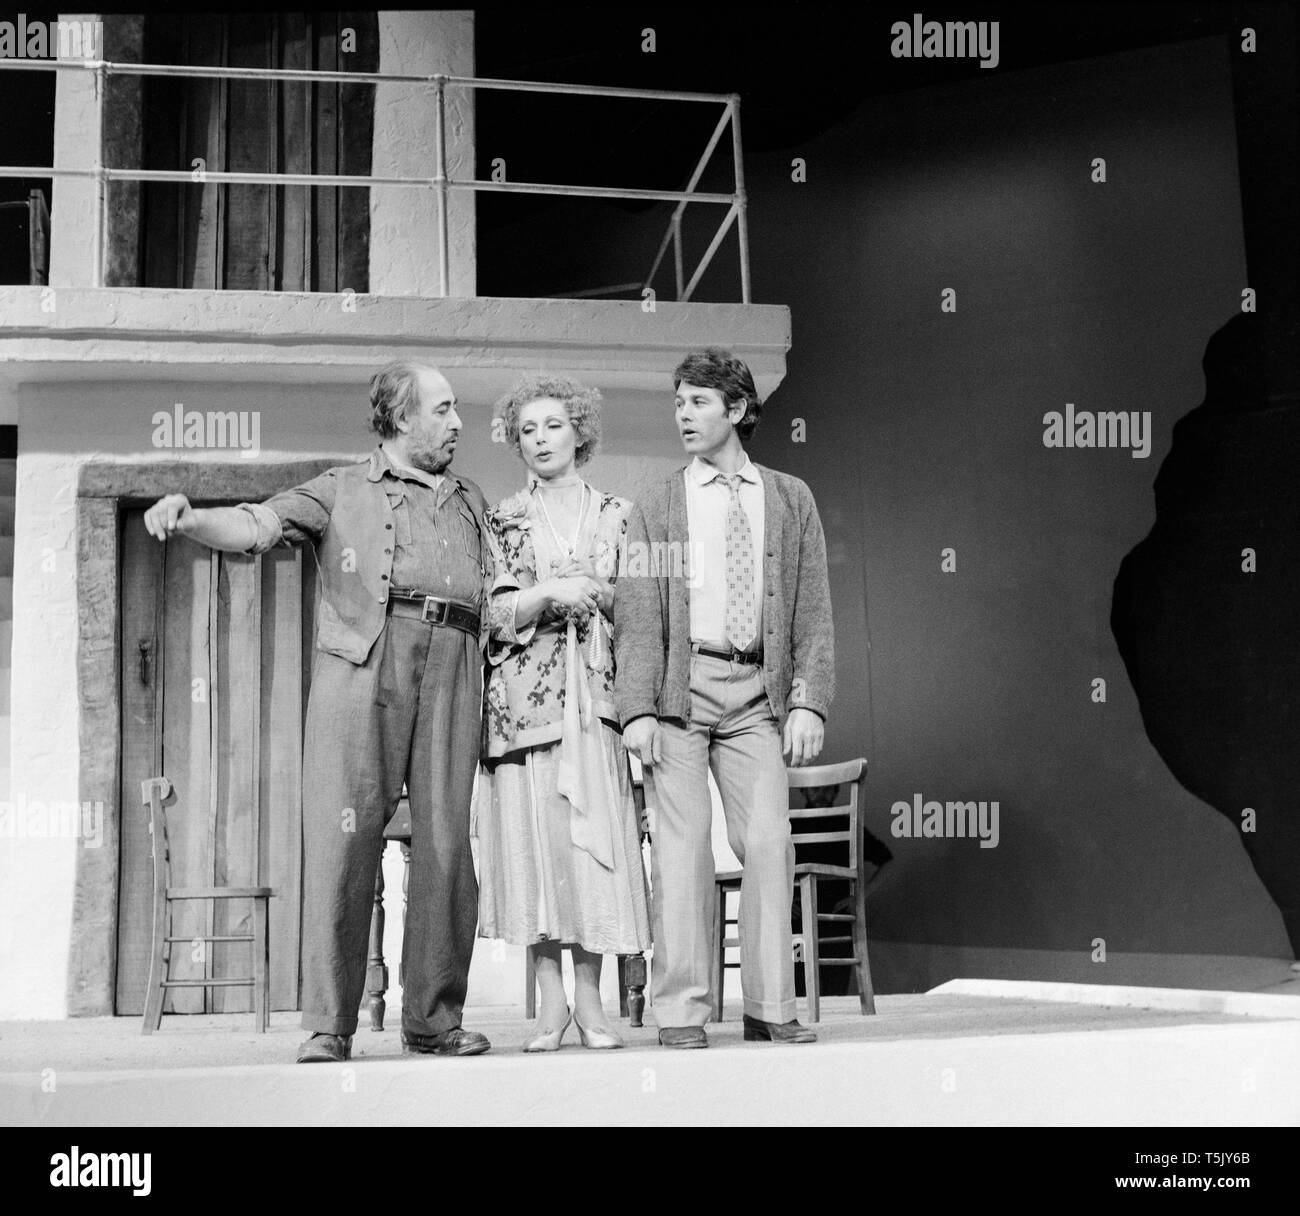 L'acteur anglais Alfred Marks, acteur écossais Jim Smilie et actrice anglaise Miriam Karlin, sur la scène du théâtre de Greenwich à Londres, pendant les répétitions pour la pièce de Zorba, en novembre 1973. Marque a joué le rôle de Zorba, Karlin le rôle de Madame Hortense, Smilie et le rôle de Nikos. Banque D'Images